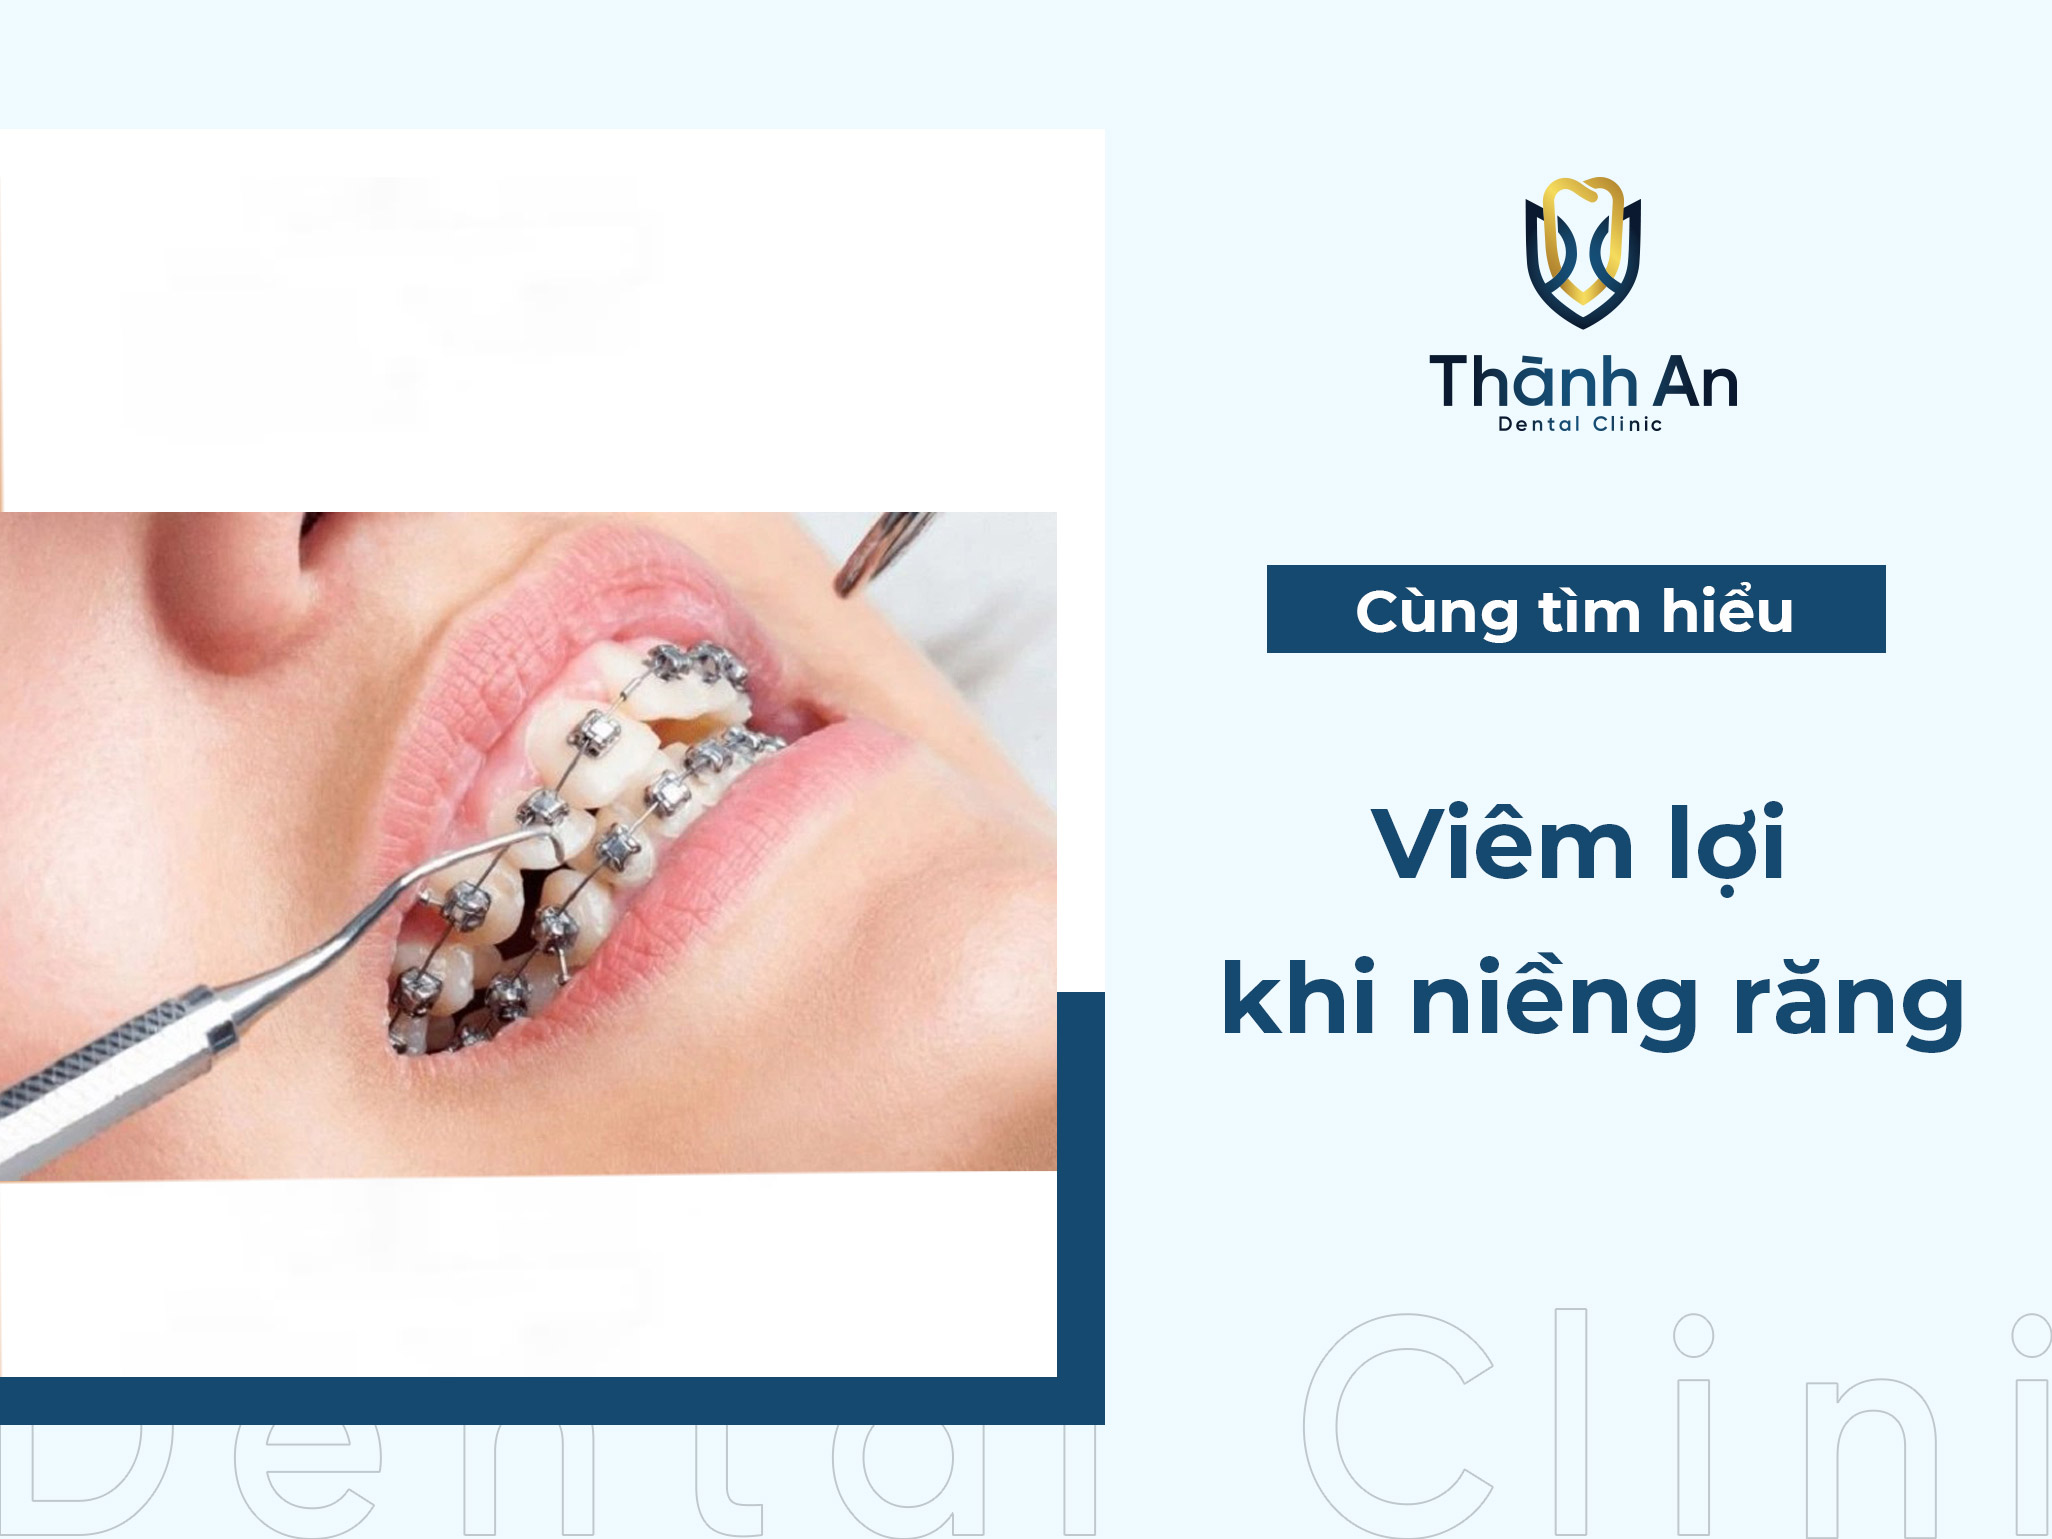 Viêm lợi khi niềng răng do đâu? Cách trị viêm lợi hiệu quả